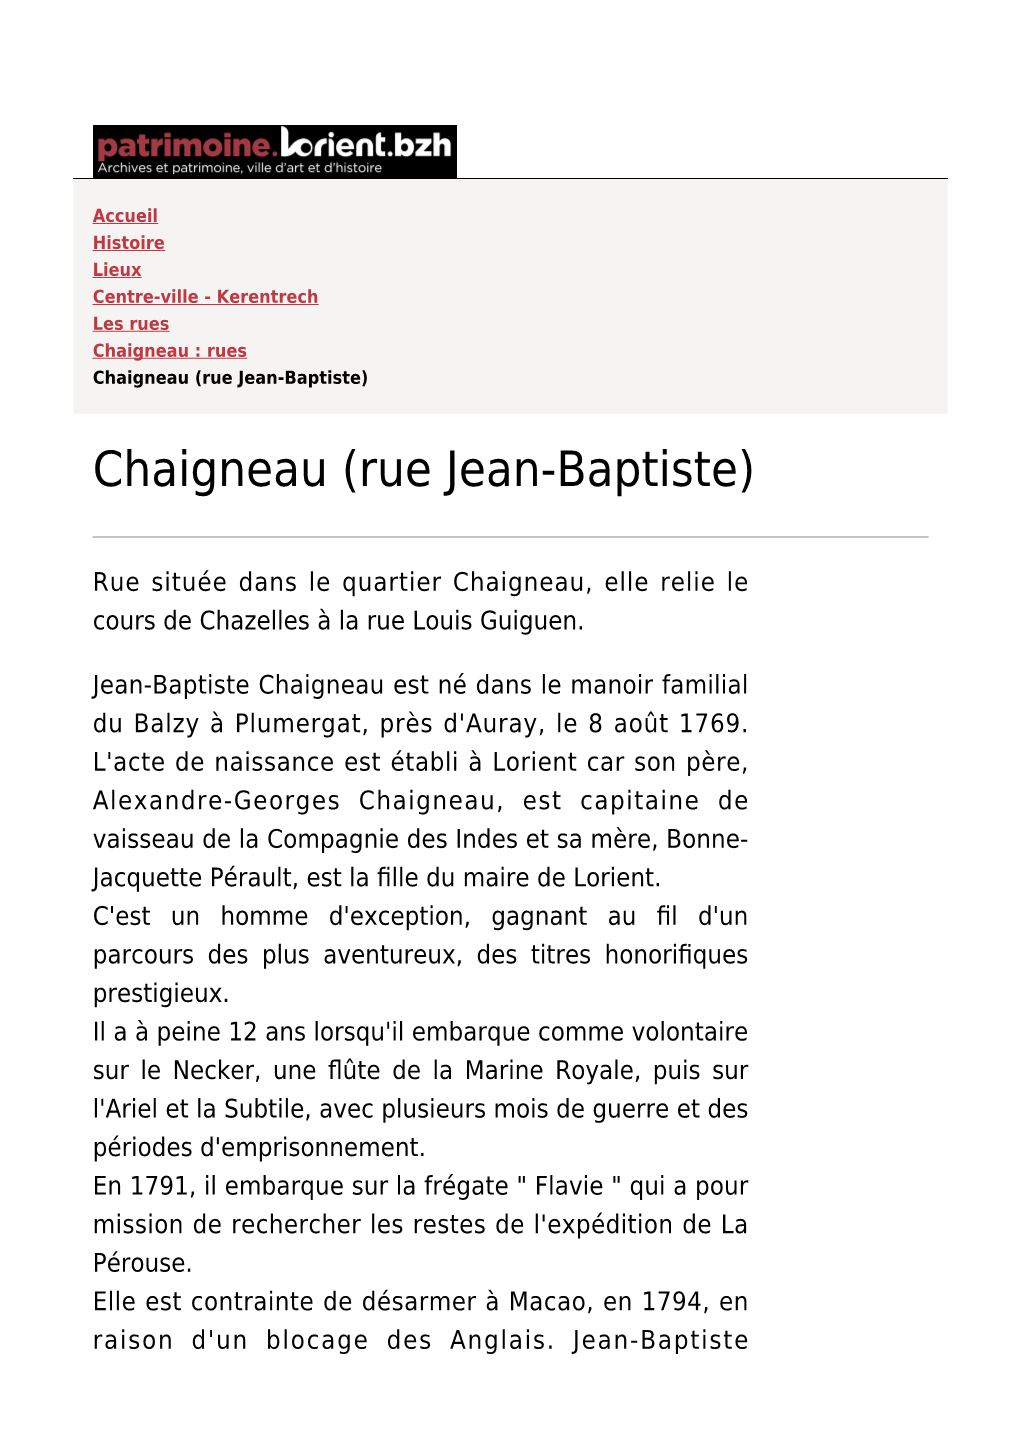 Chaigneau (Rue Jean-Baptiste)